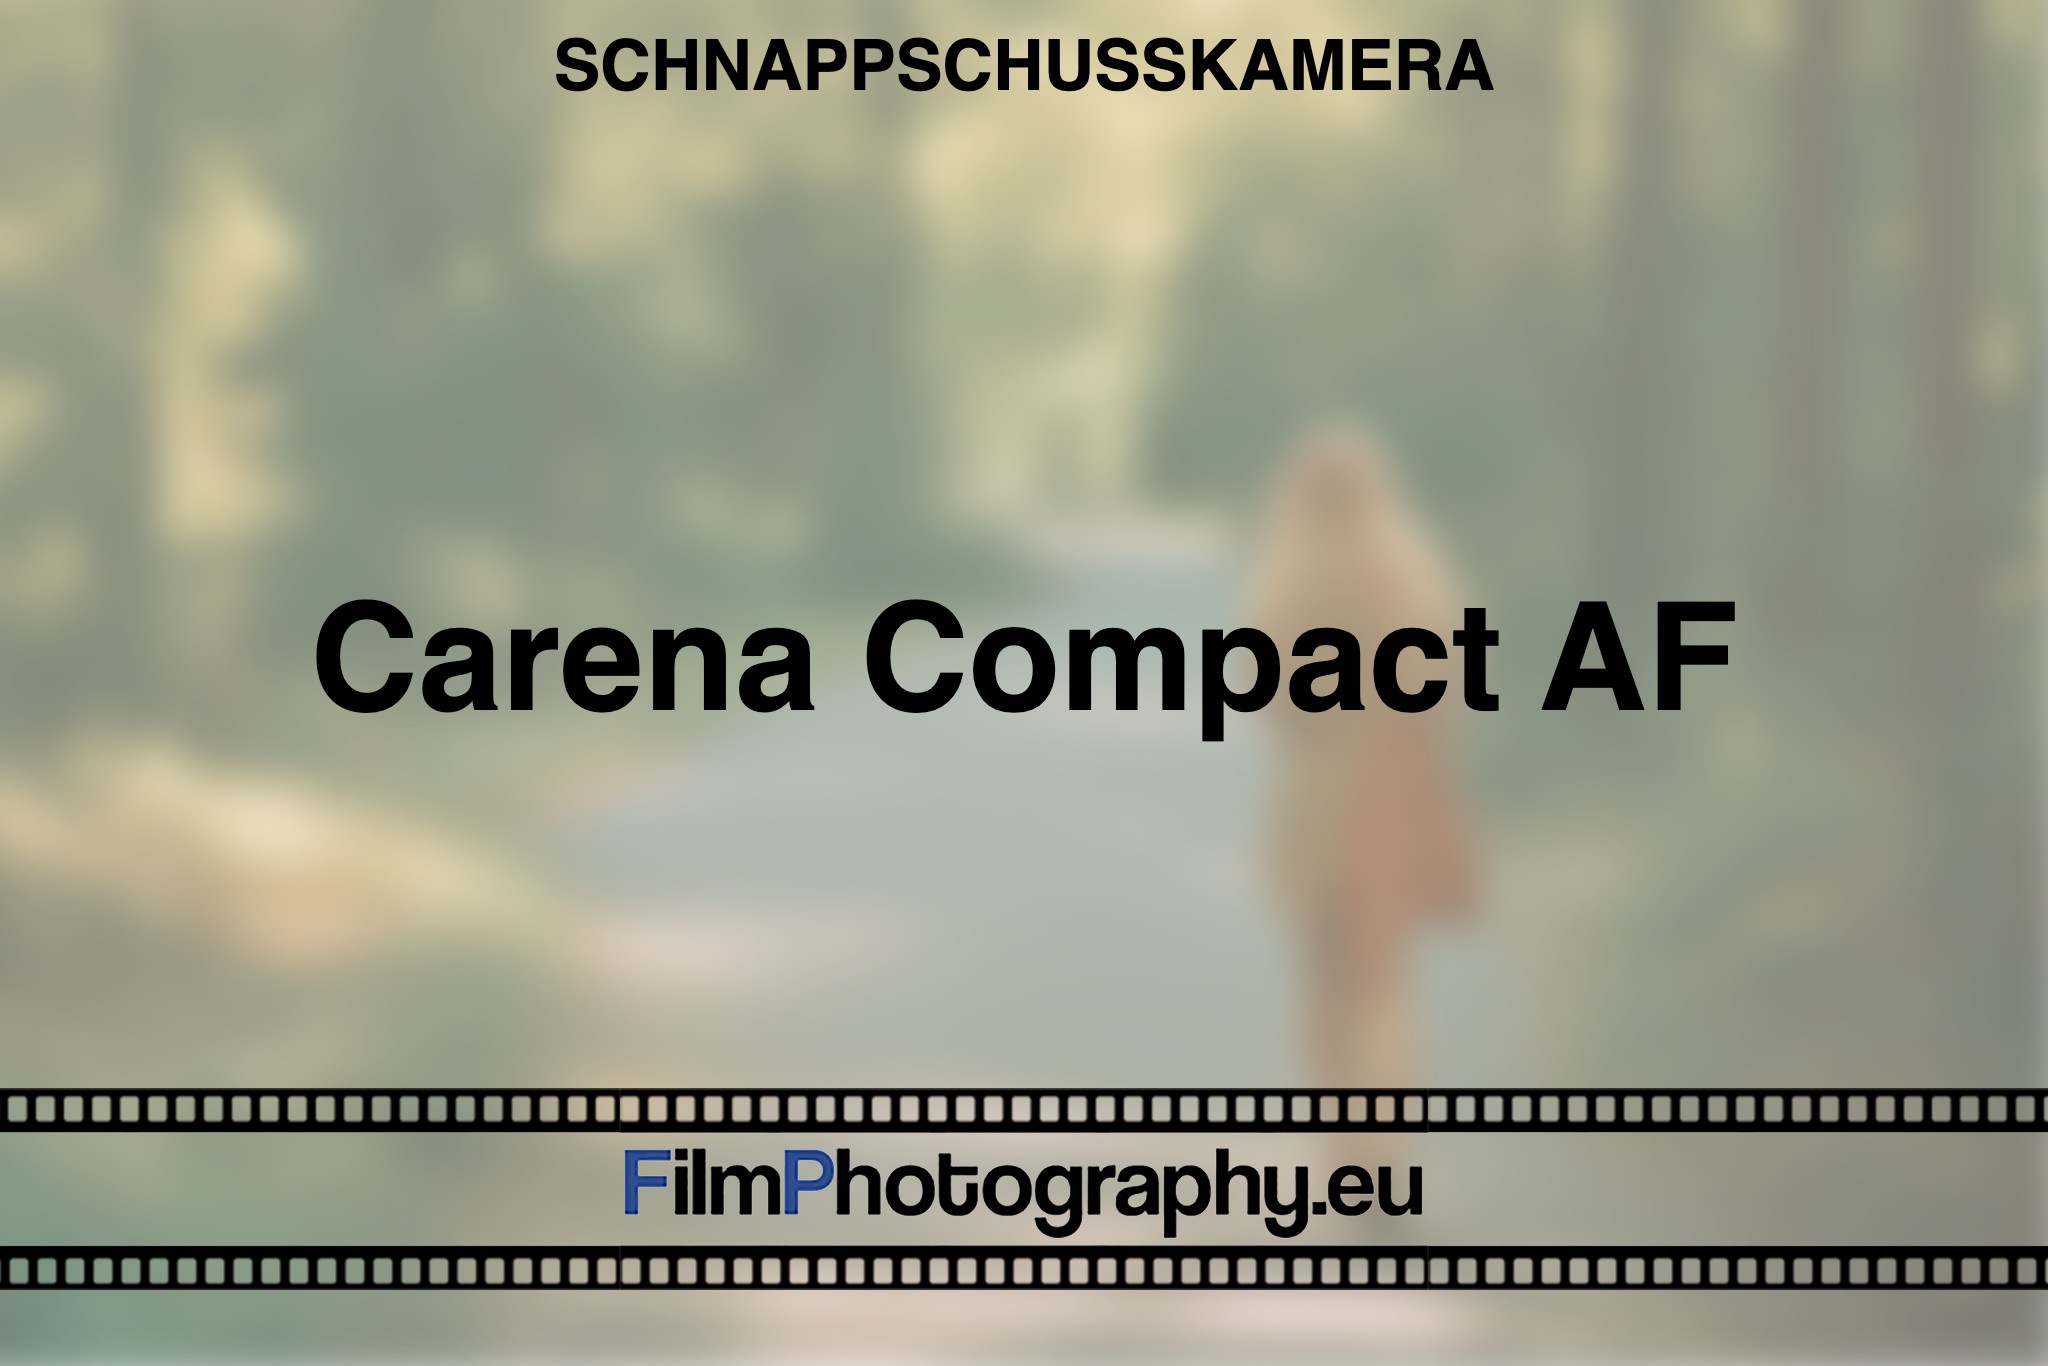 carena-compact-af-schnappschusskamera-bnv